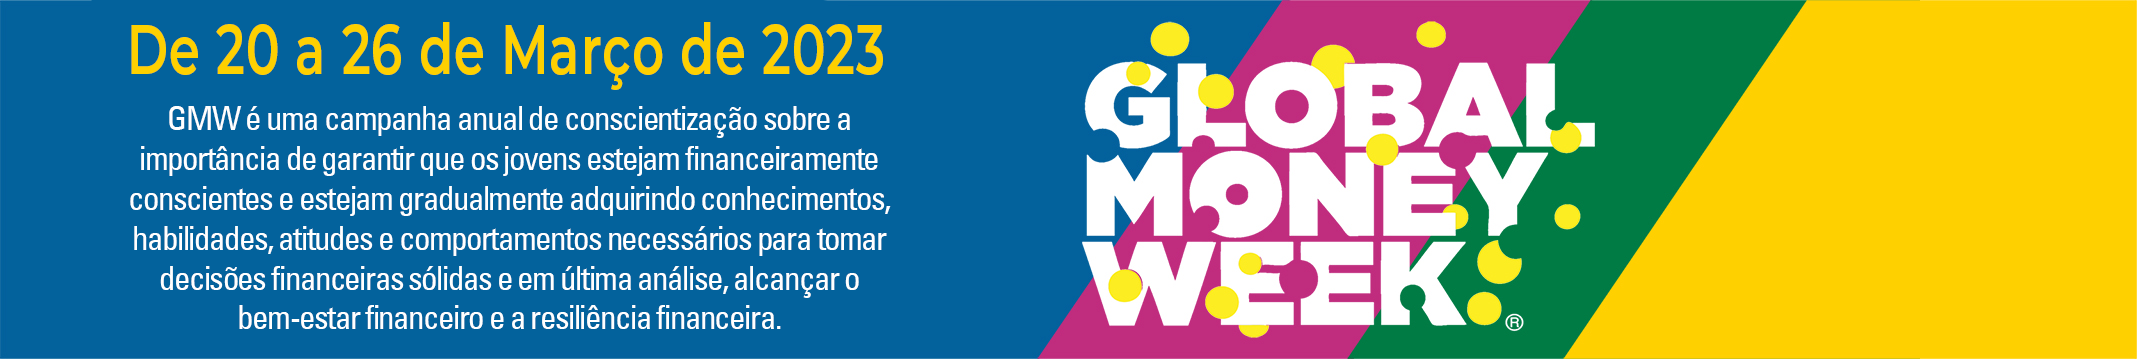 Faculdade Fipecafi - A Faculdade FIPECAFI sediará um dos eventos  integrantes do Global Money Week (GMW) para o ano de 2022. O GMW é uma  campanha internacional de conscientização financeira organizada pela